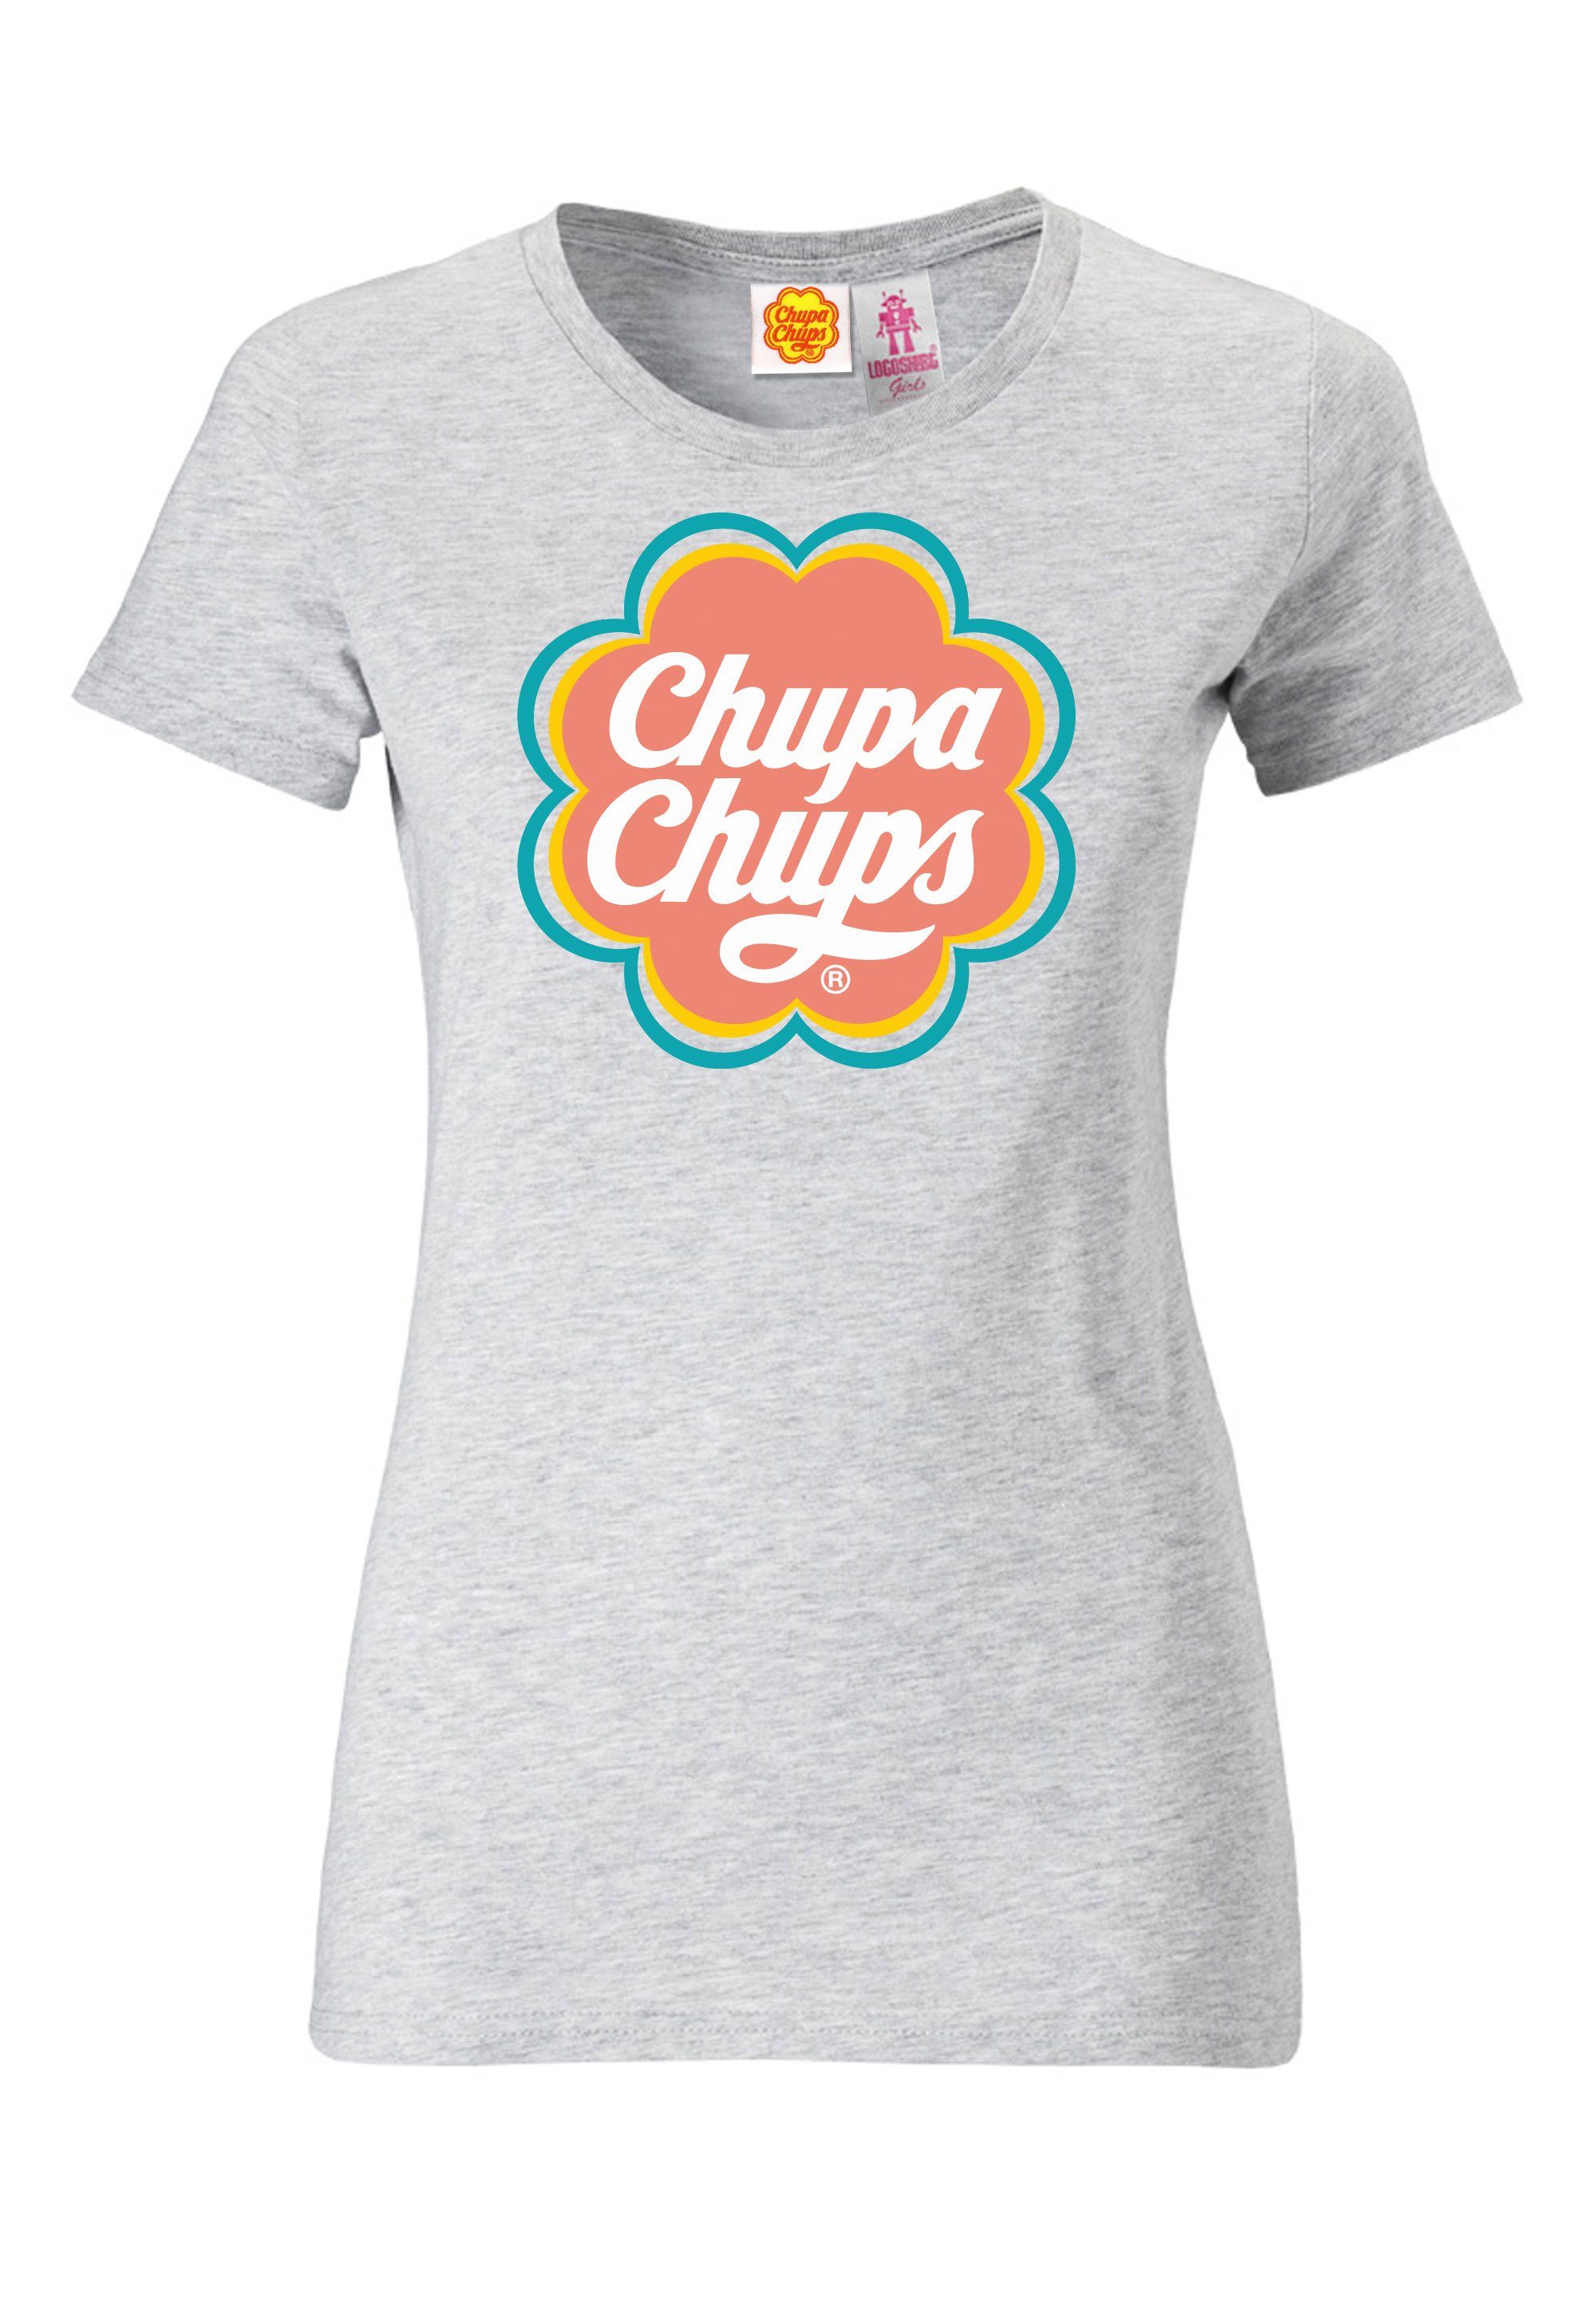 lizenzierten Chups Chupa LOGOSHIRT T-Shirt mit Design